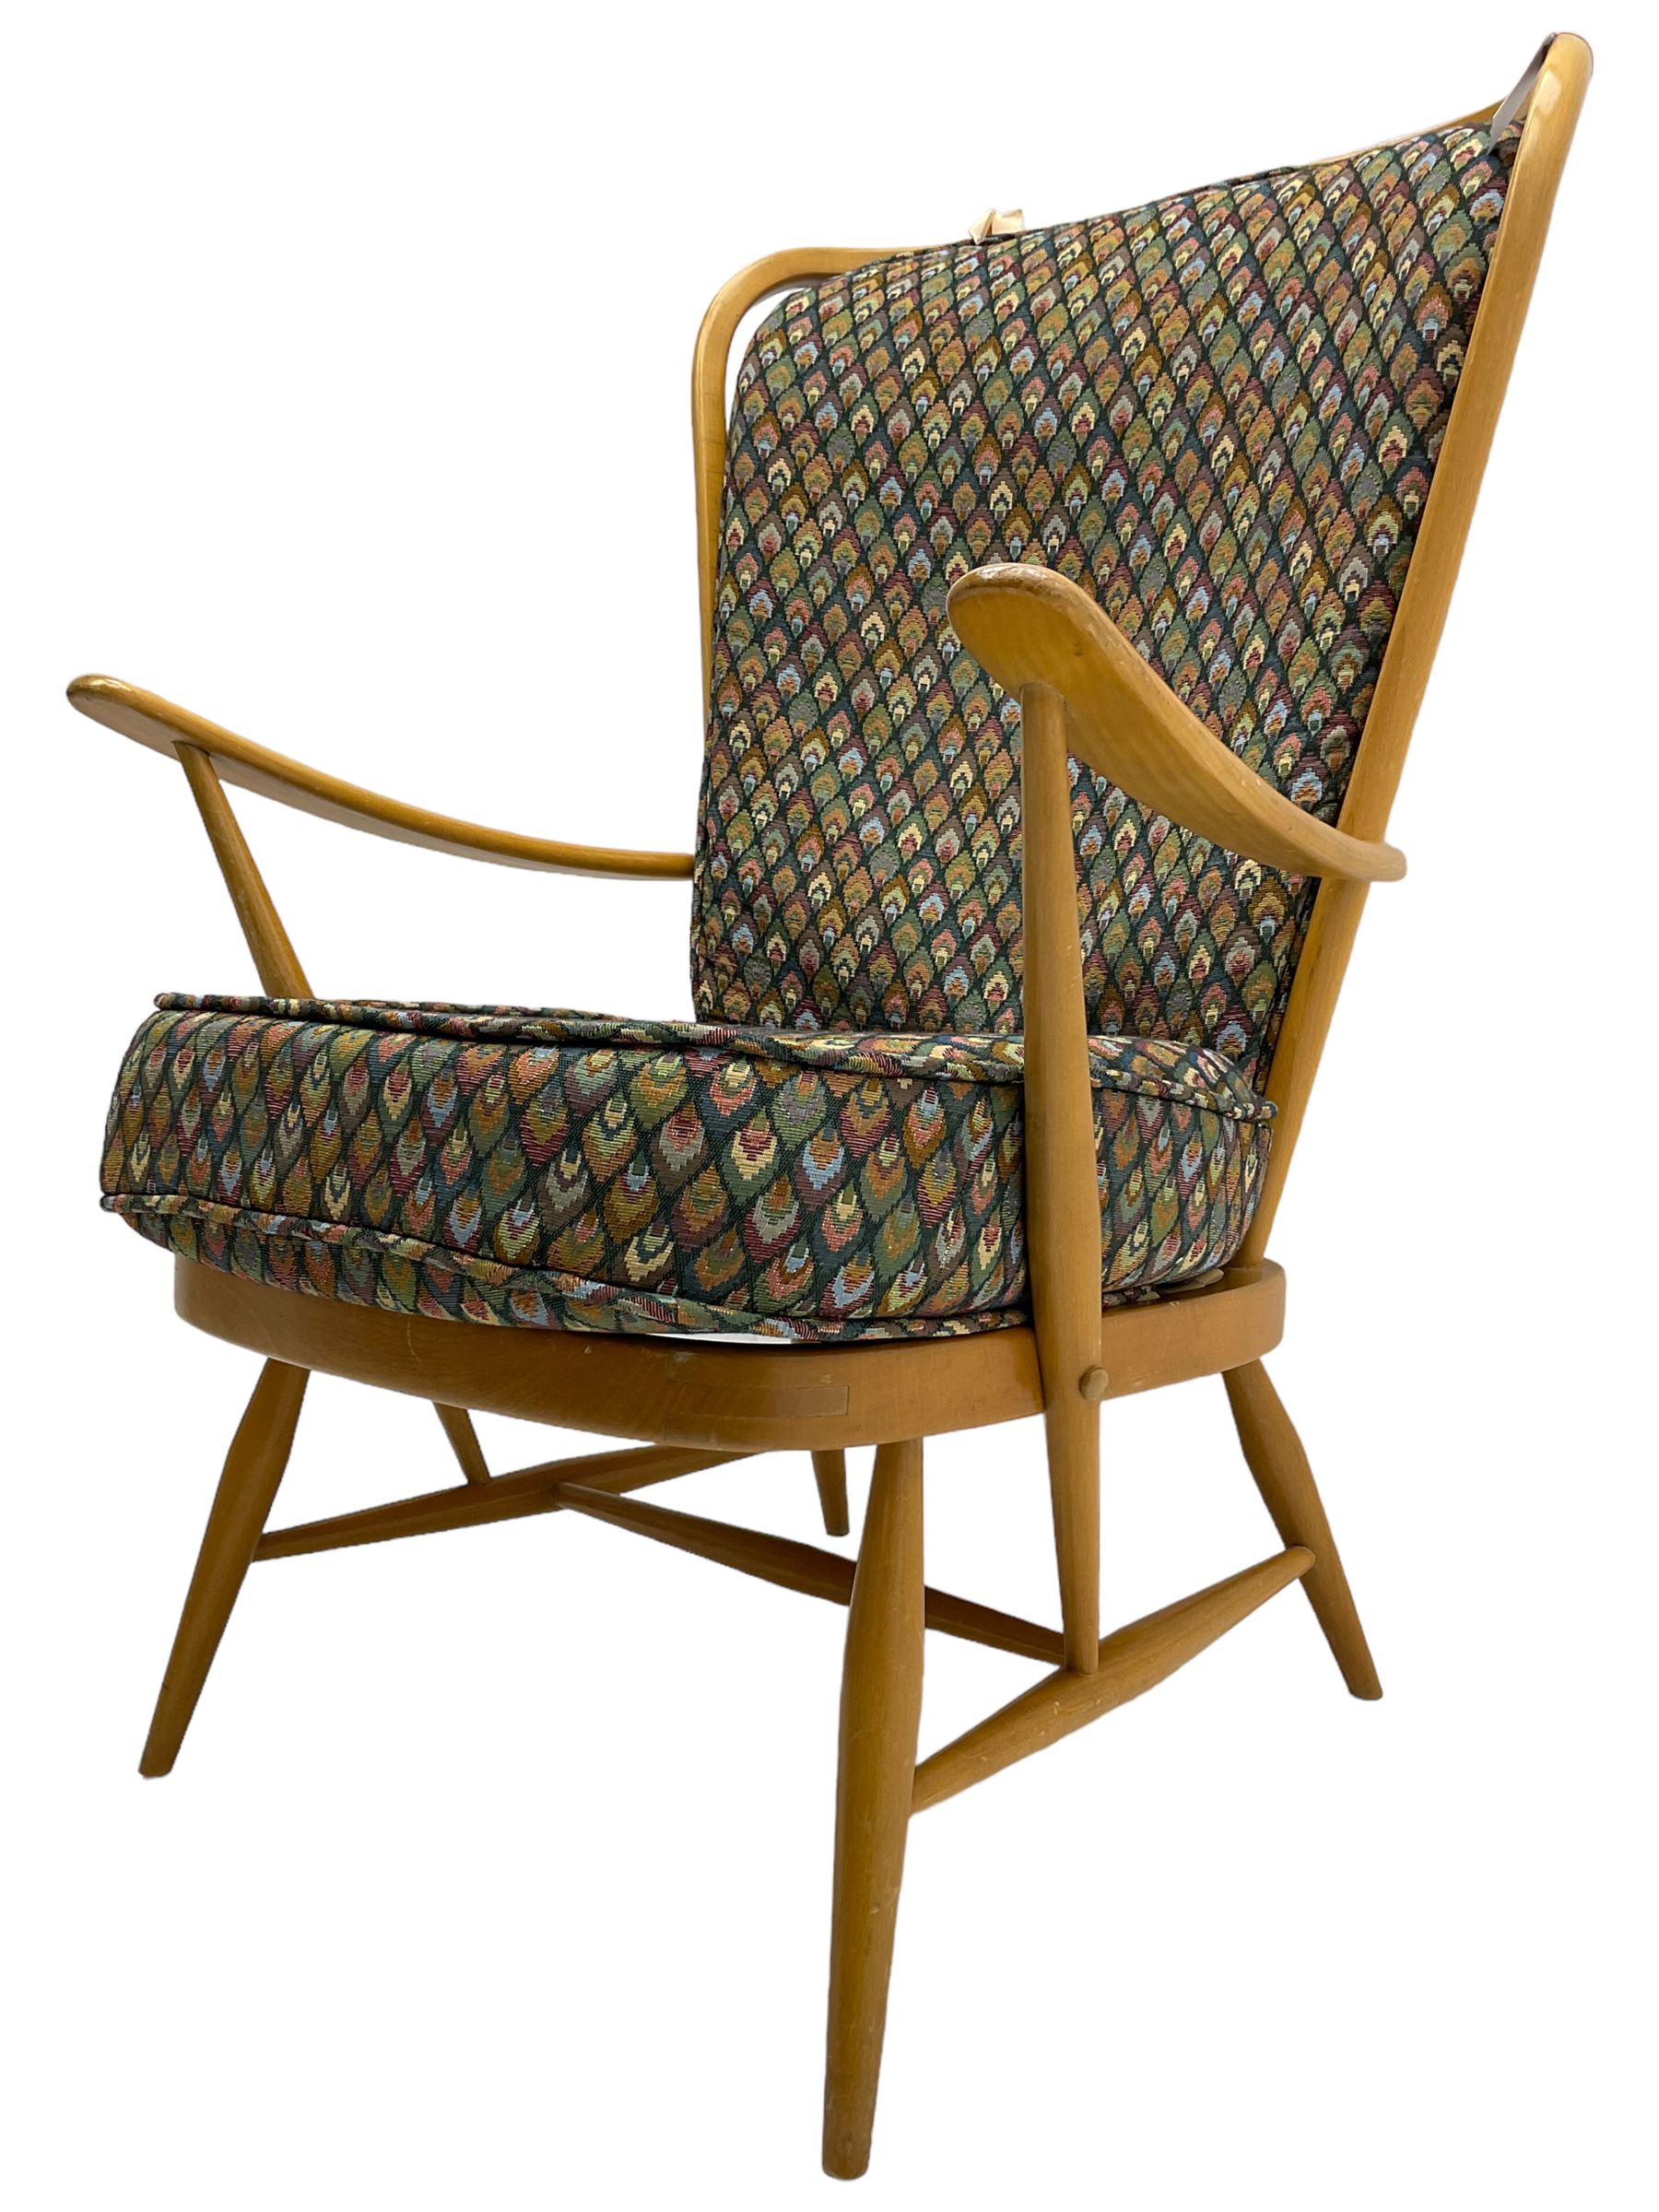 Ercol - light beech framed high-back 'Windsor' easy chair - Image 3 of 7